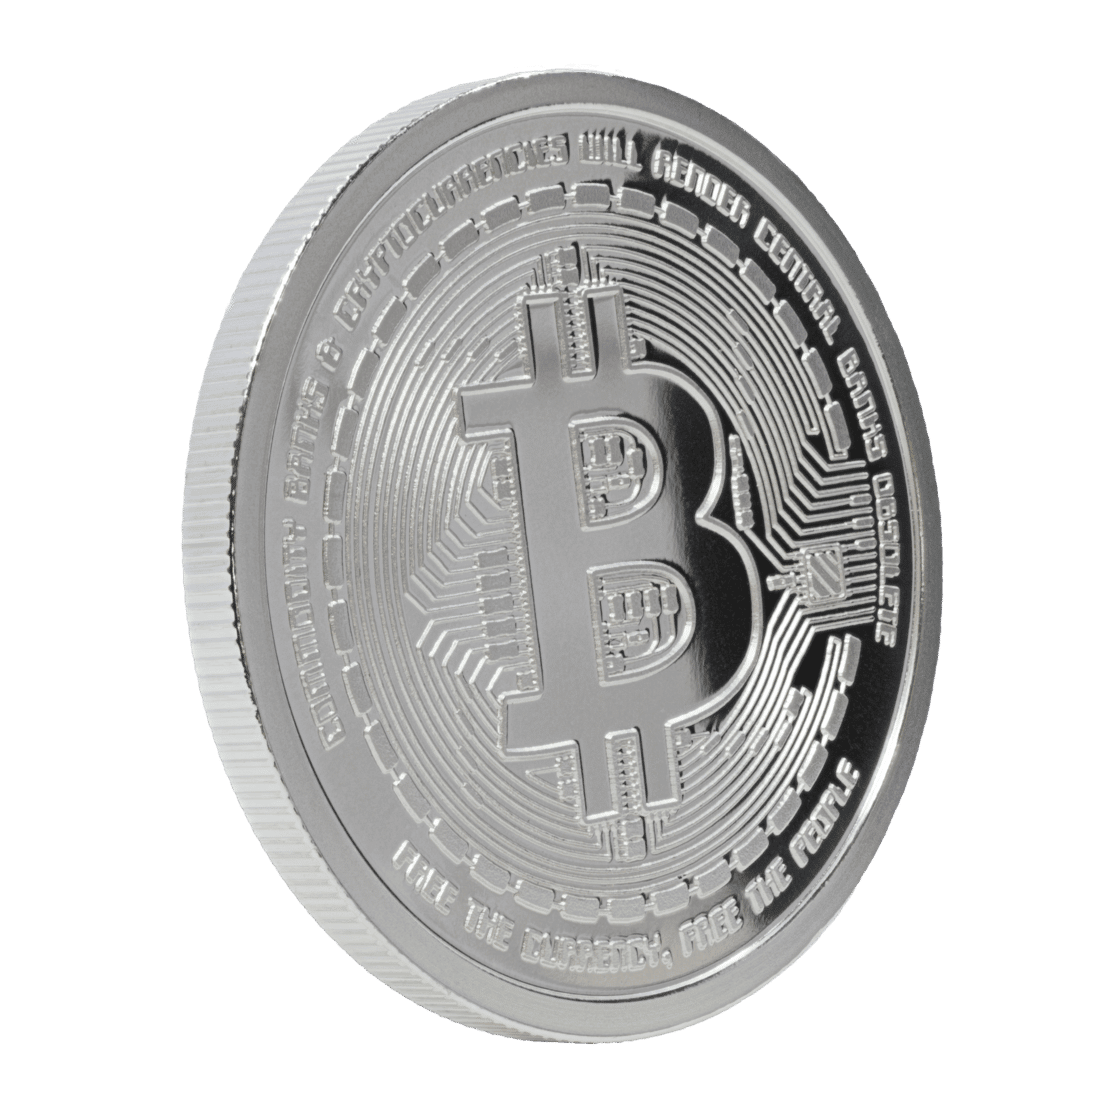 Silver Bitcoin Commemorative 1 Ounce Coin